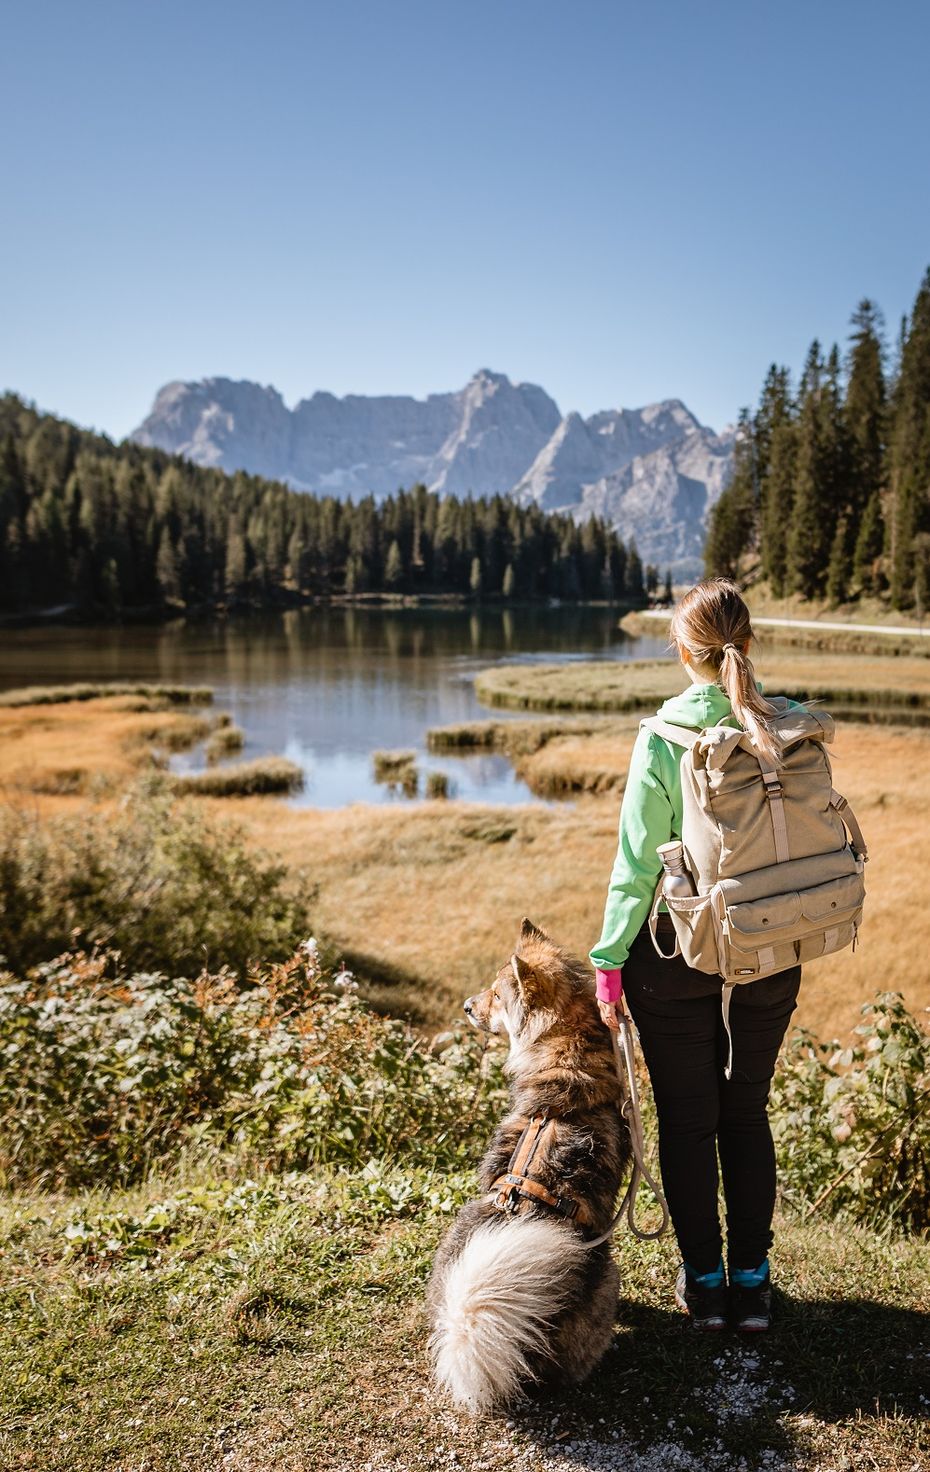 Frau mit Rucksack und Hund vor einem See im Hintergrund Gebirge